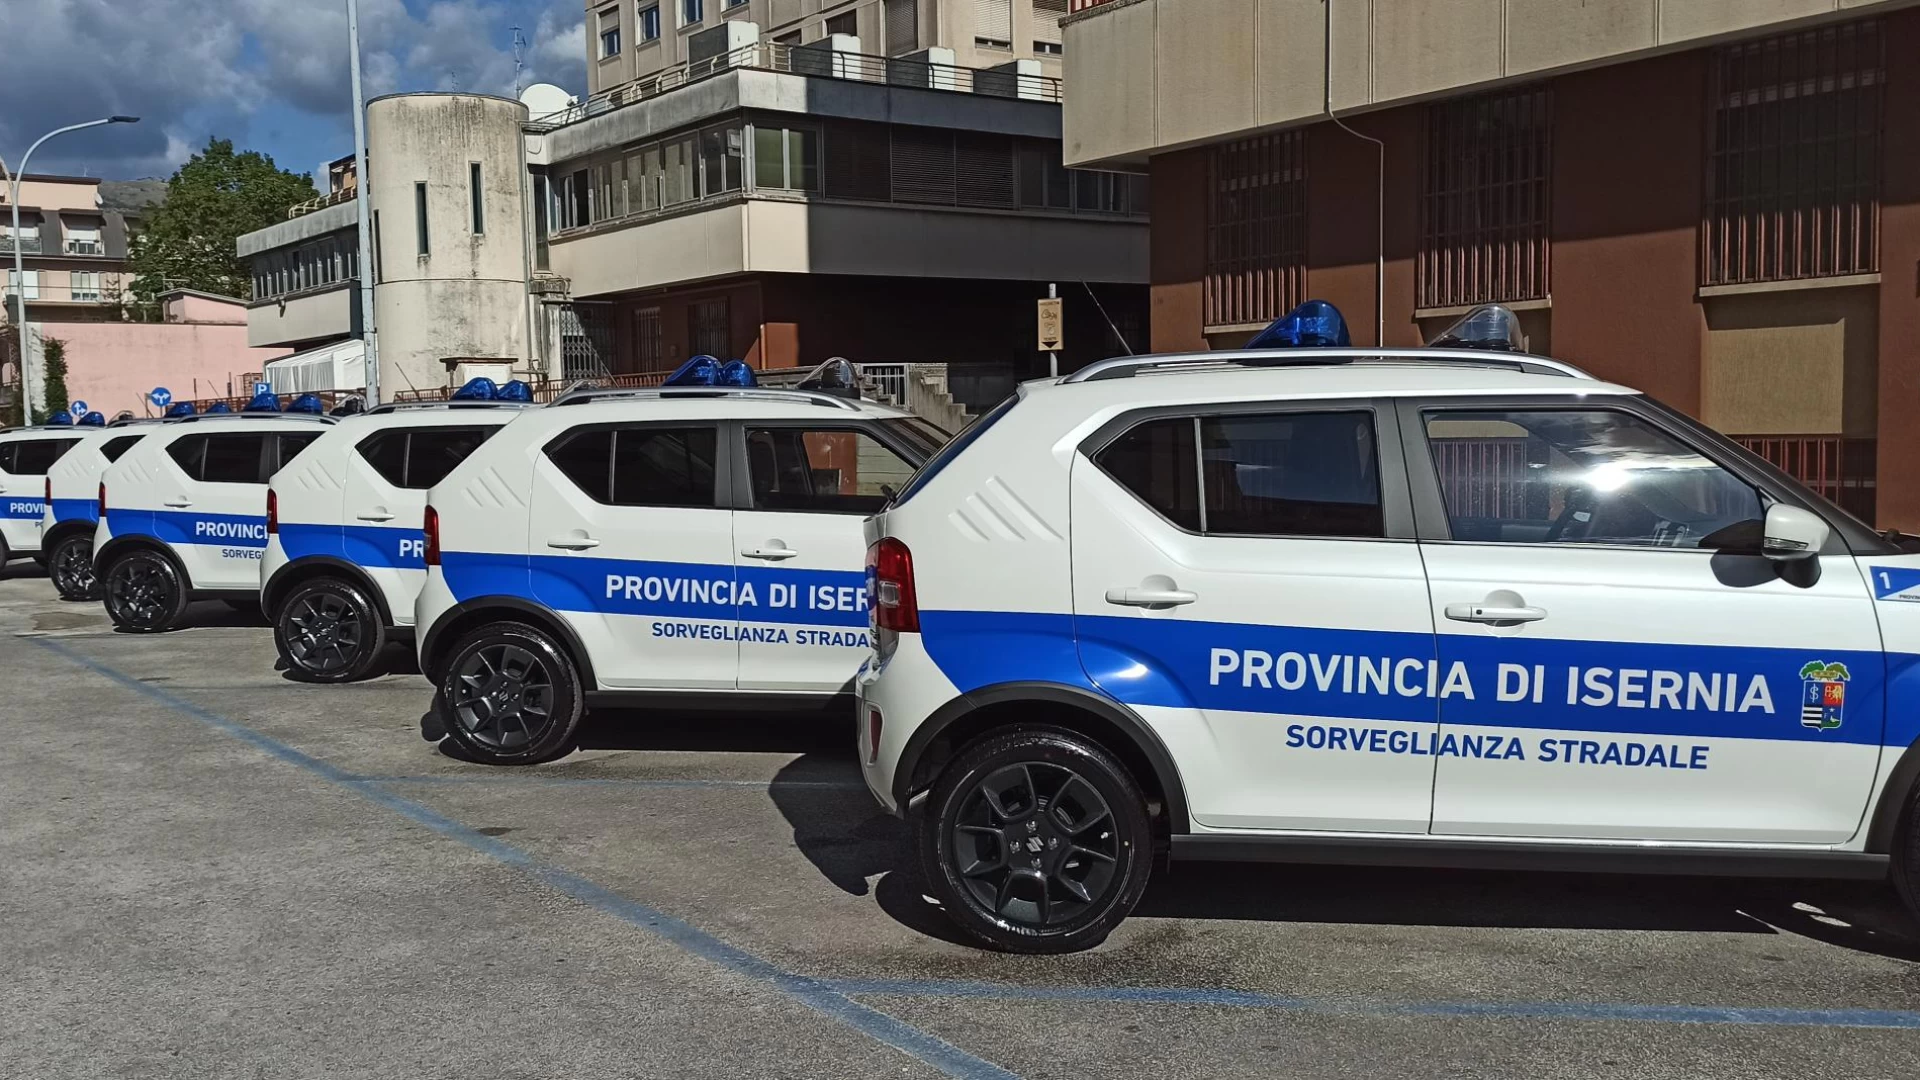 Isernia: nuove auto ibride in dotazione alla Polizia Provinciale da utilizzare per la vigilanza stradale.